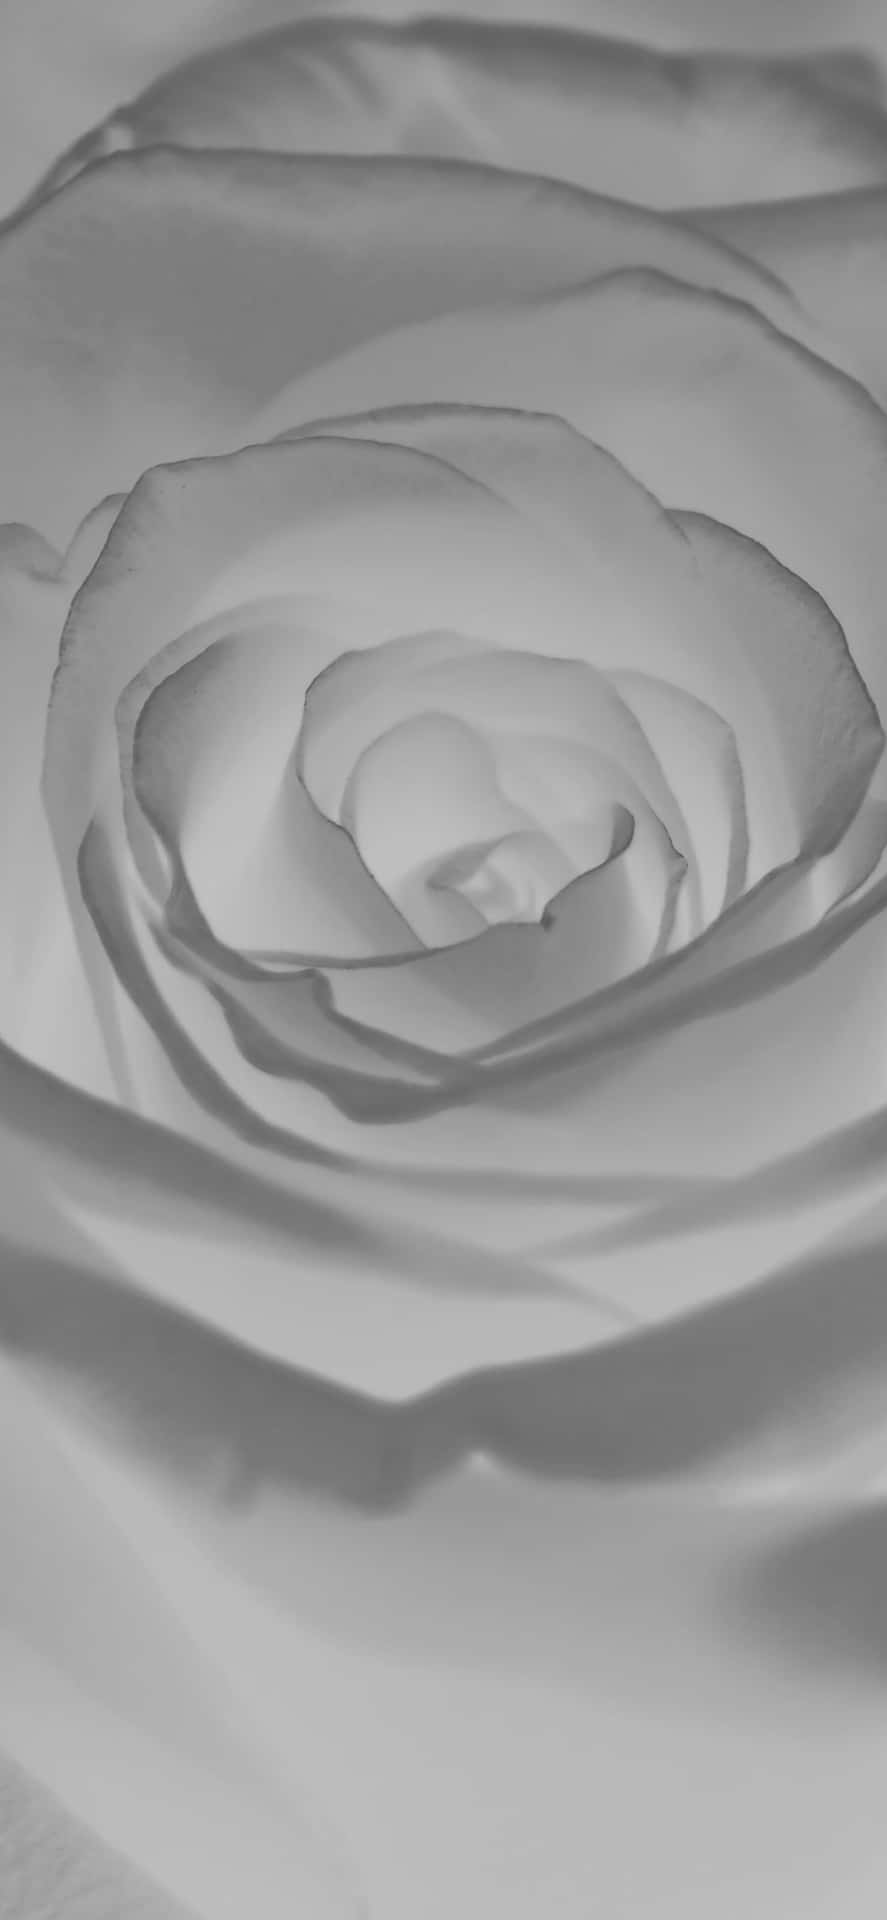 Florde Rosa En Blanco Y Negro Para Iphone. Fondo de pantalla